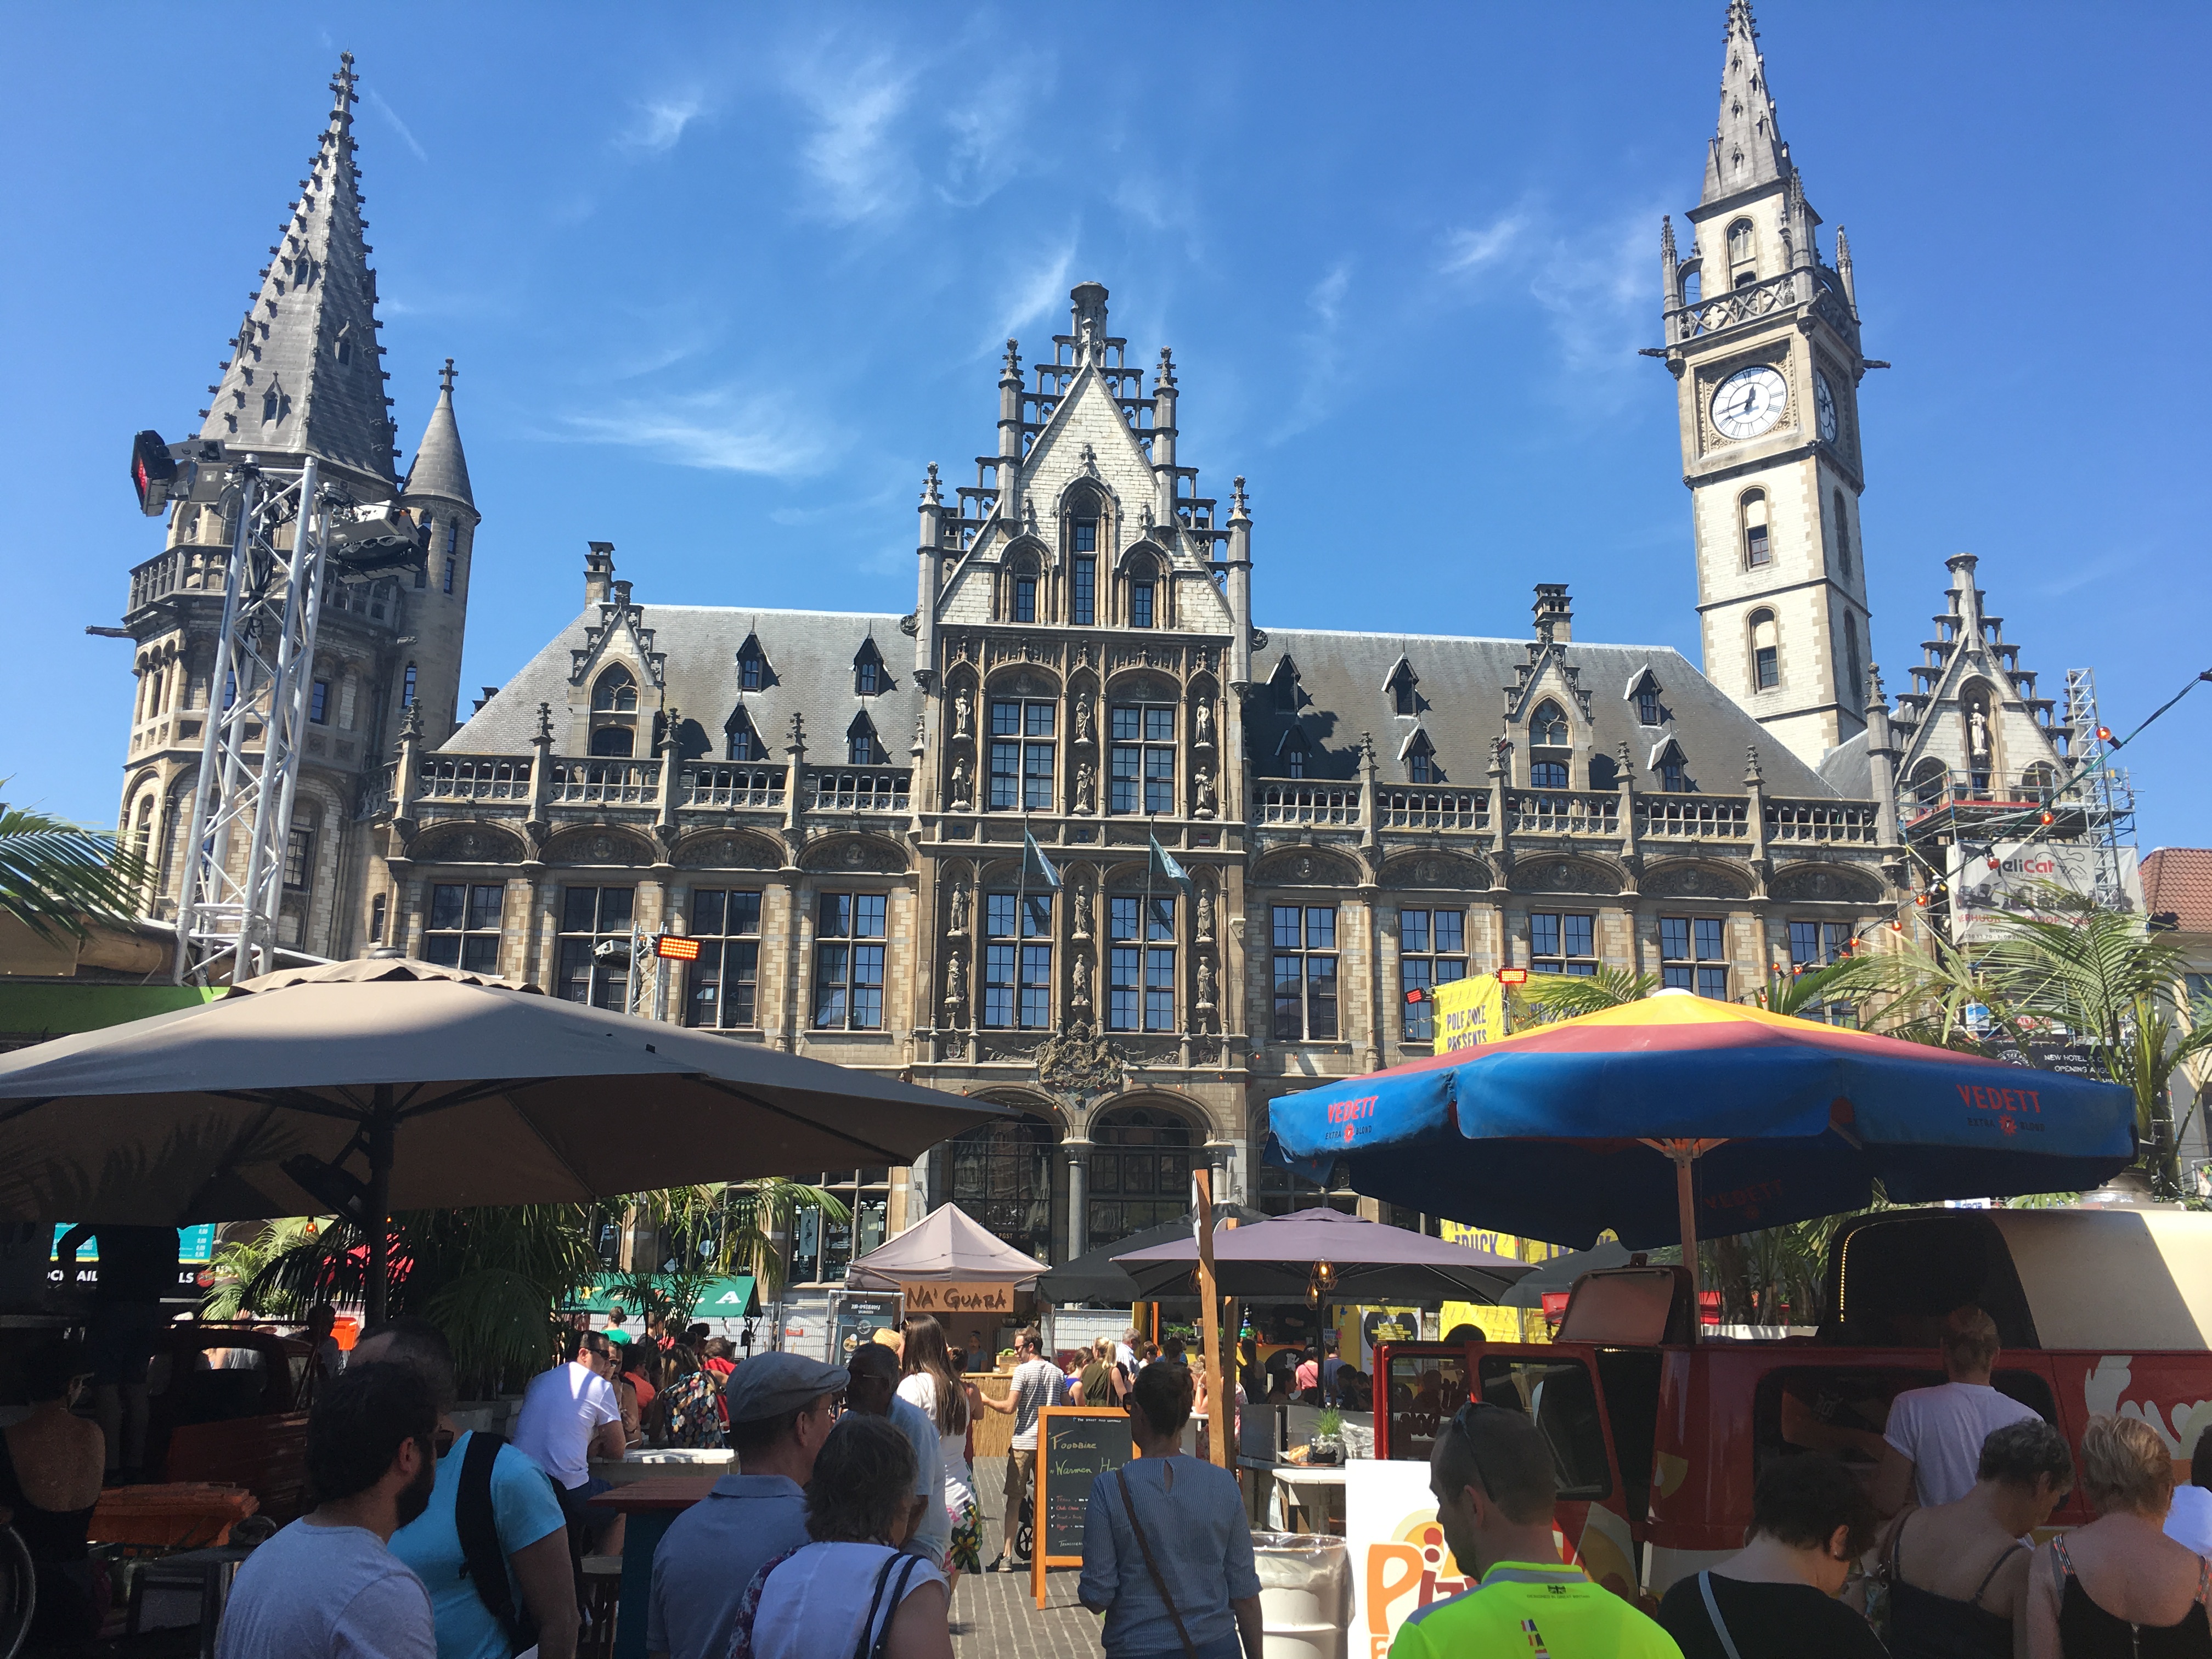 Culinary festival in Ghent, Belgium.